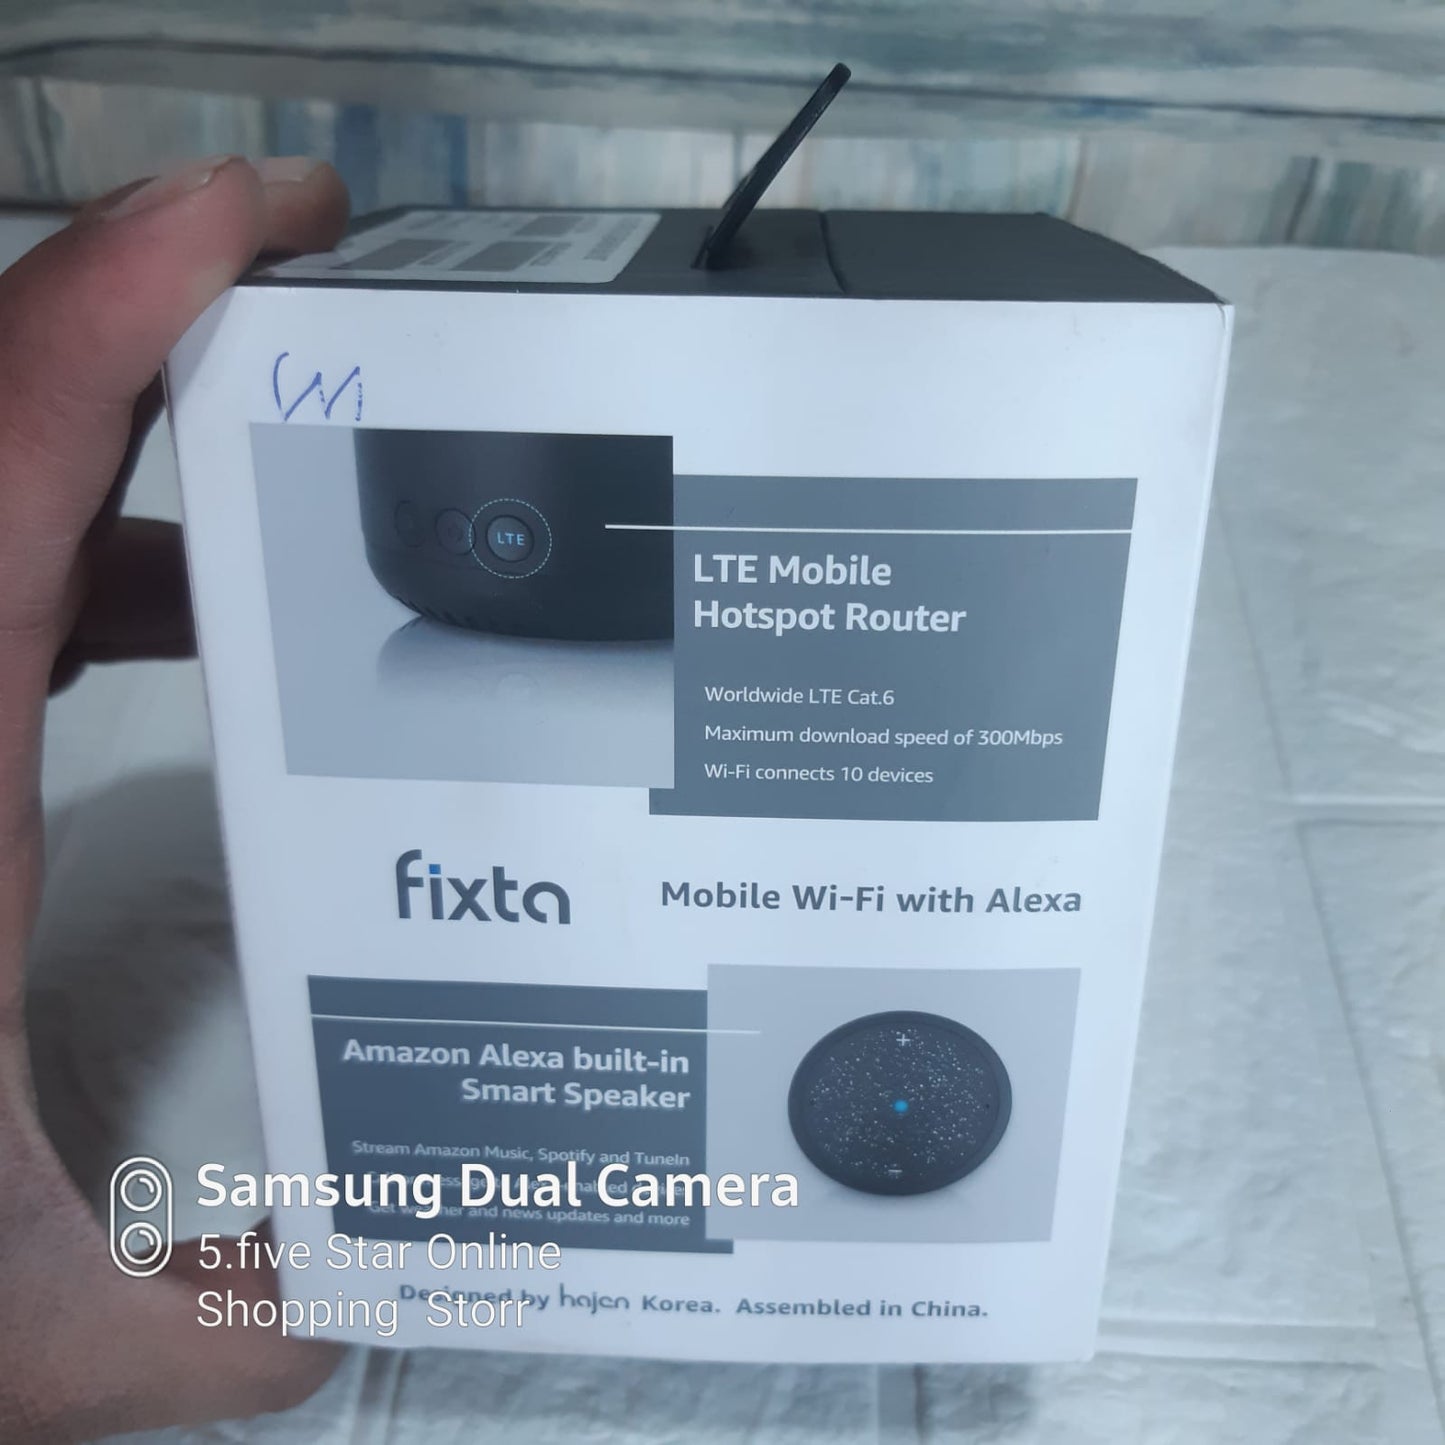 Fixta Amazon Alexa - Smart Speaker LTE Mobile Hotspot